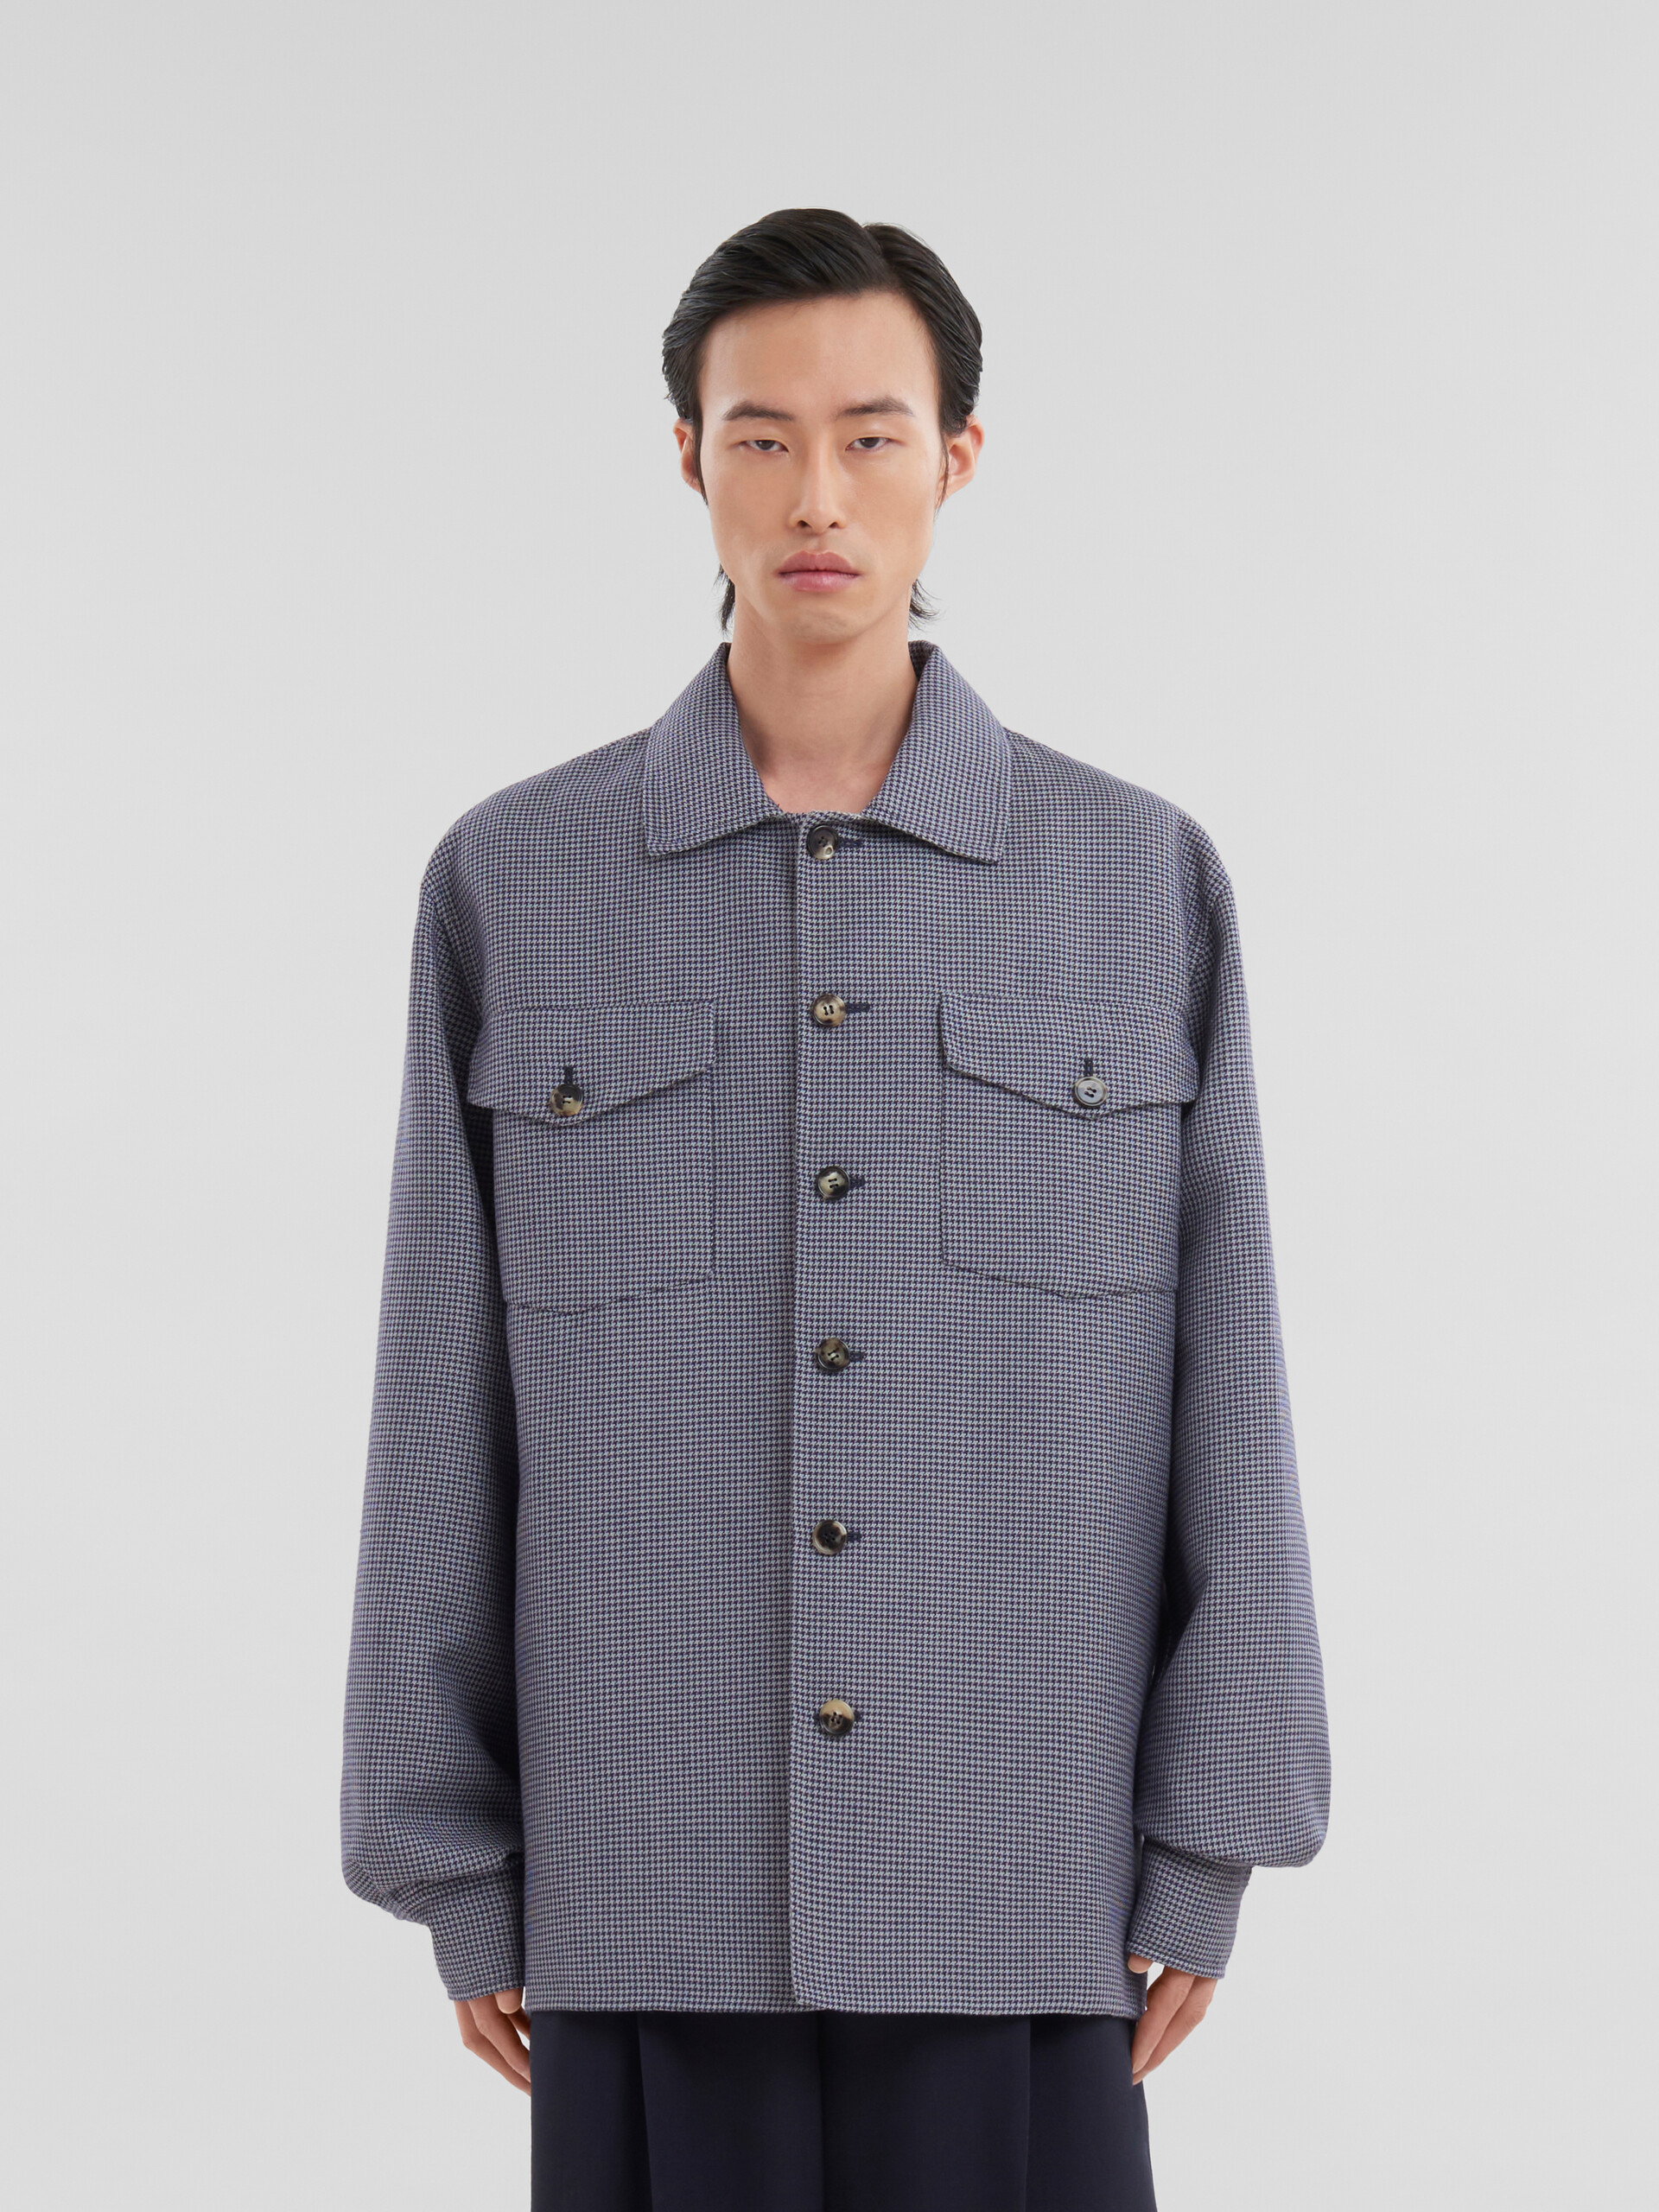 ブルー 千鳥格子 ウール製シャツ、ポケット付き - シャツ - Image 2